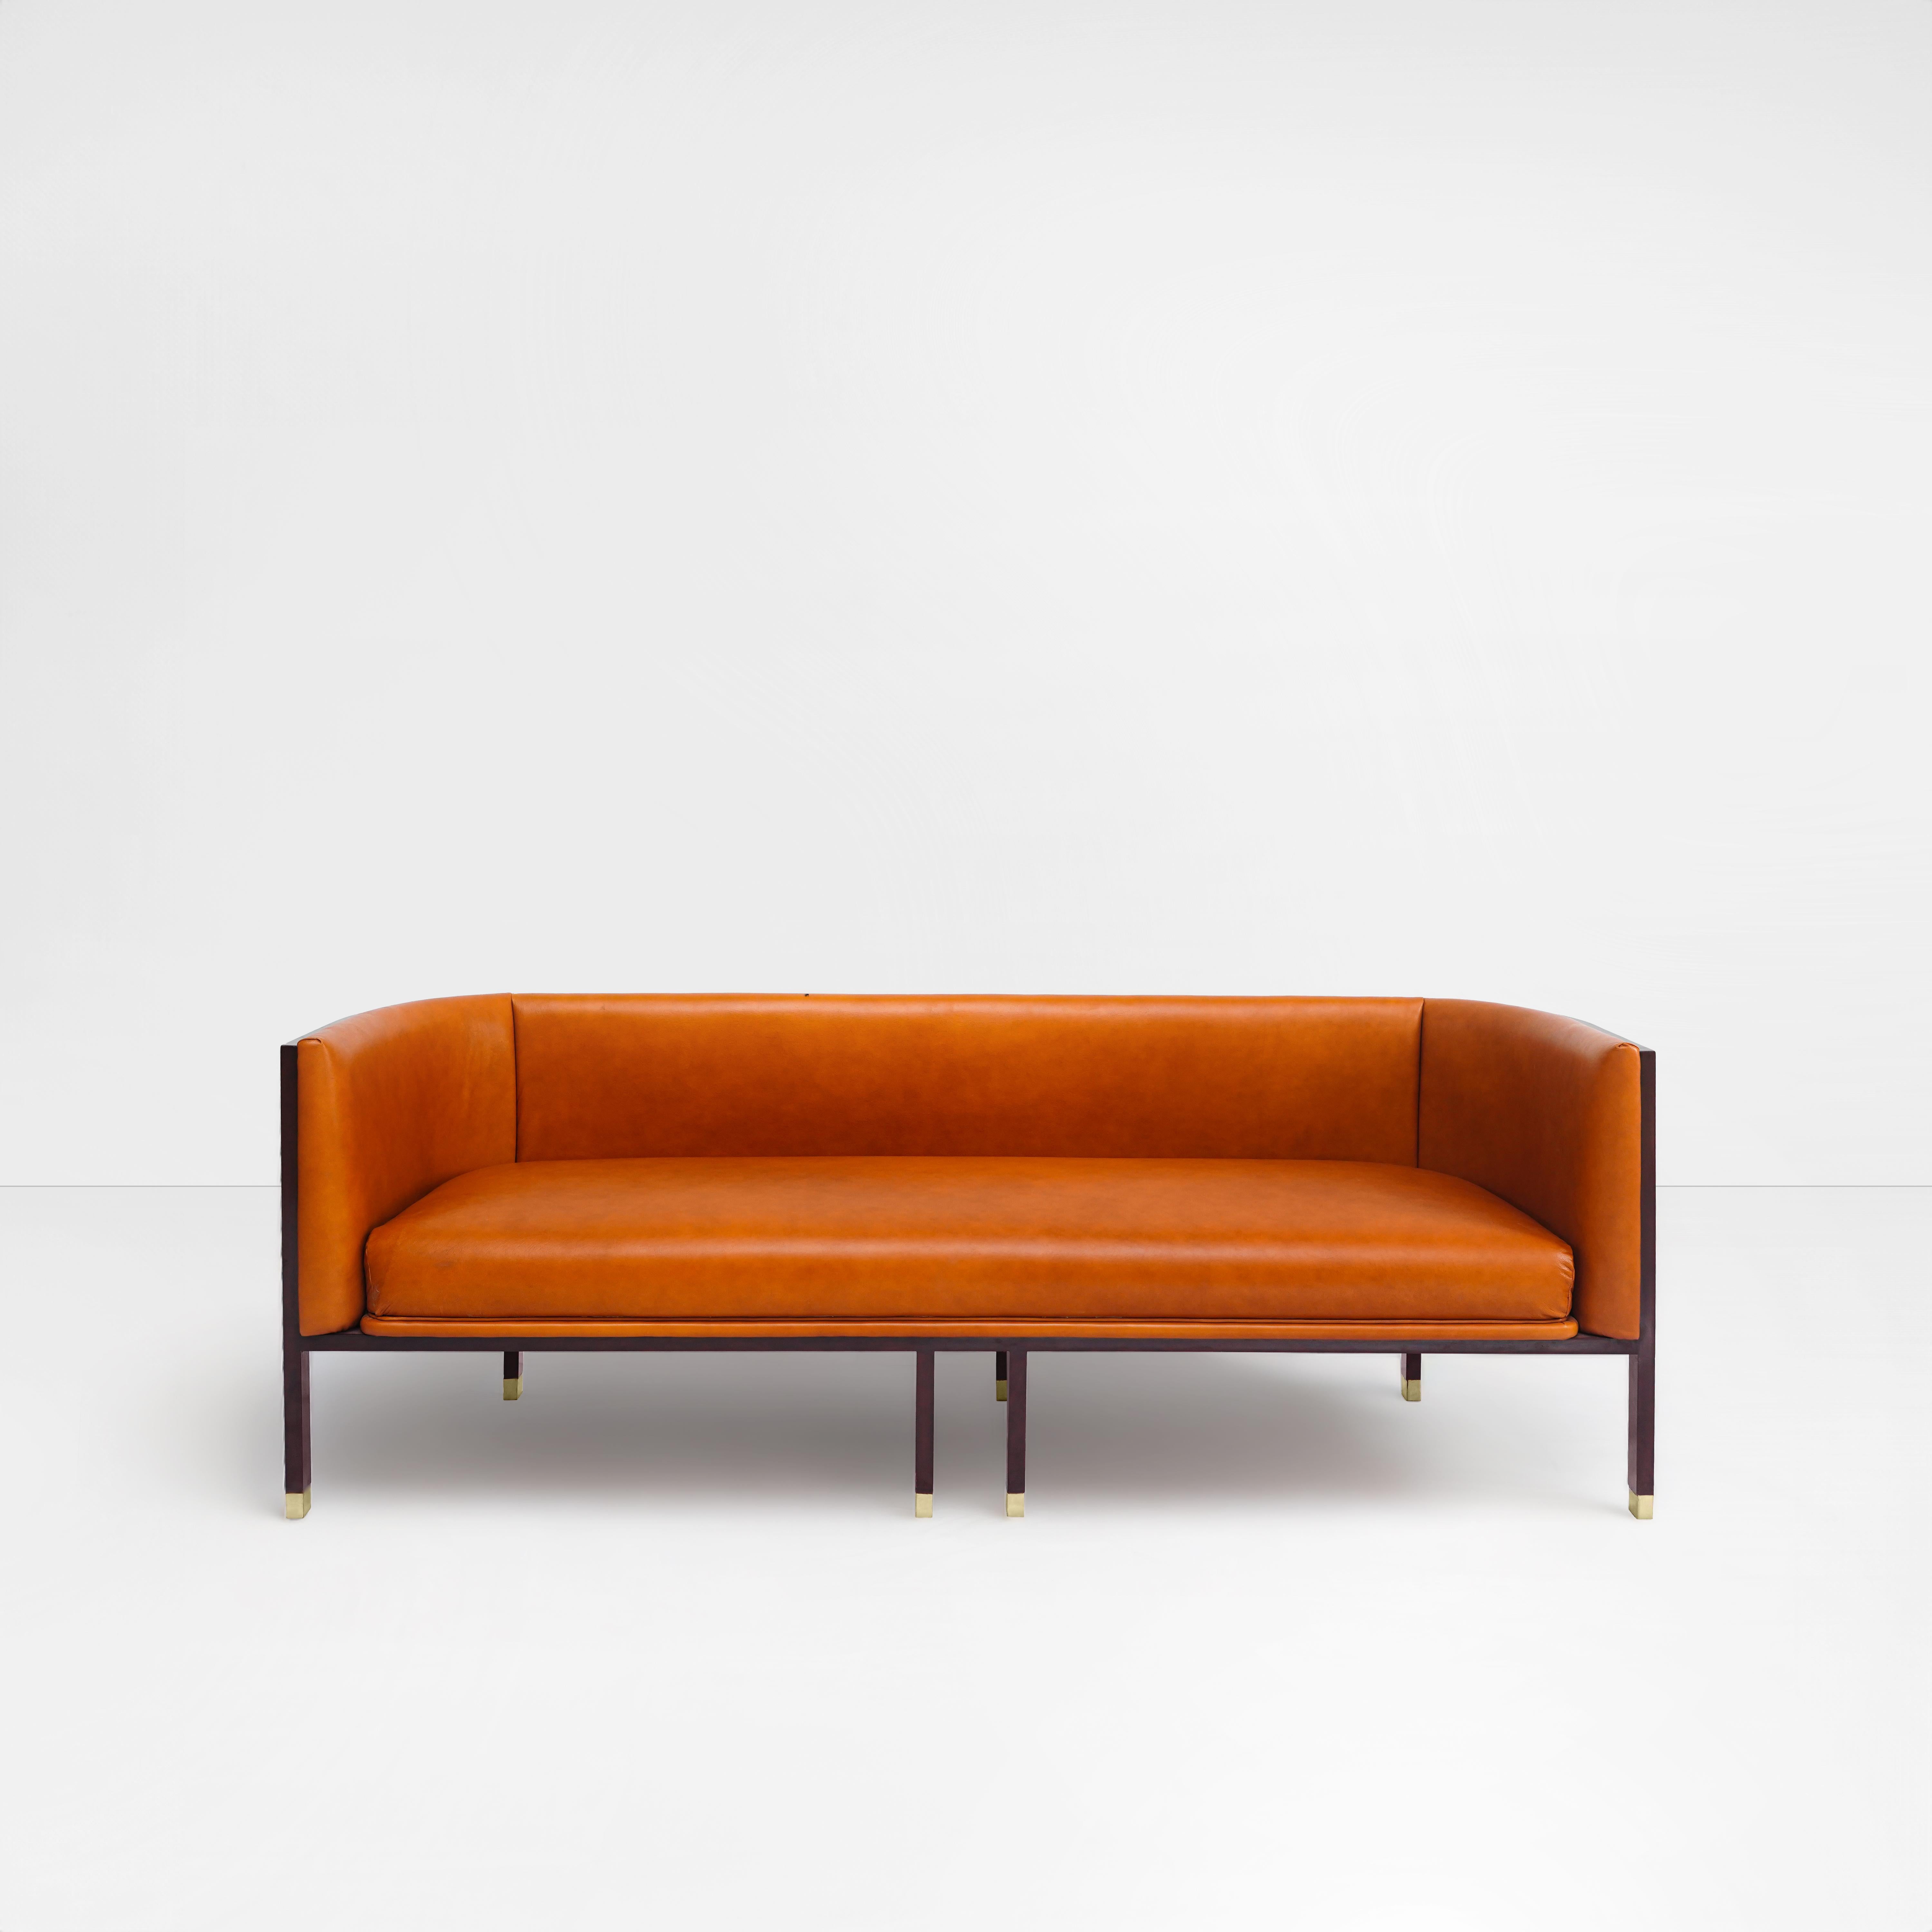 The Moderns sofa, Barrel sofa, round back chair, bold, modern, walnut wood en vente